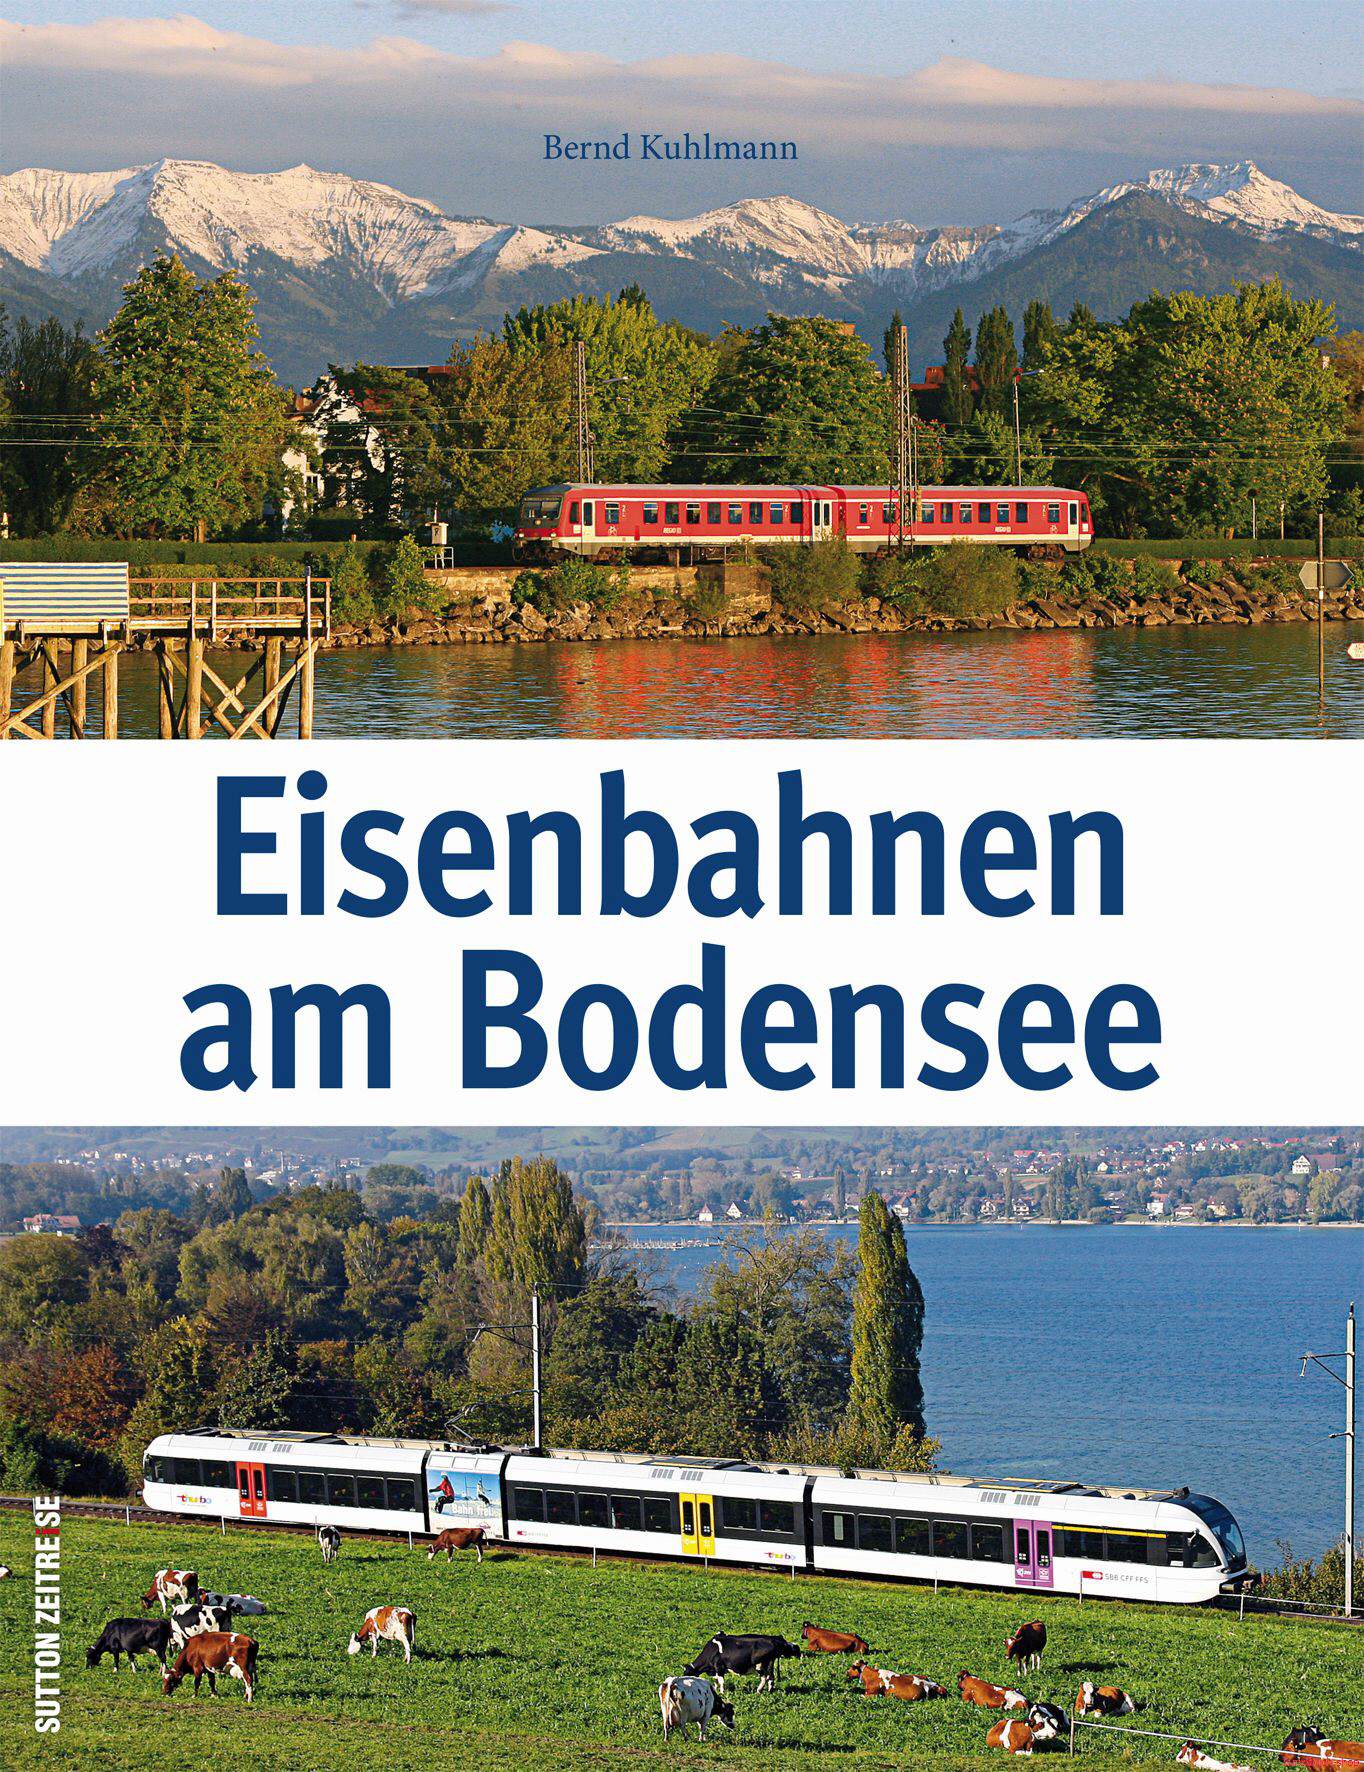 Eisenbahnen am Bodensee